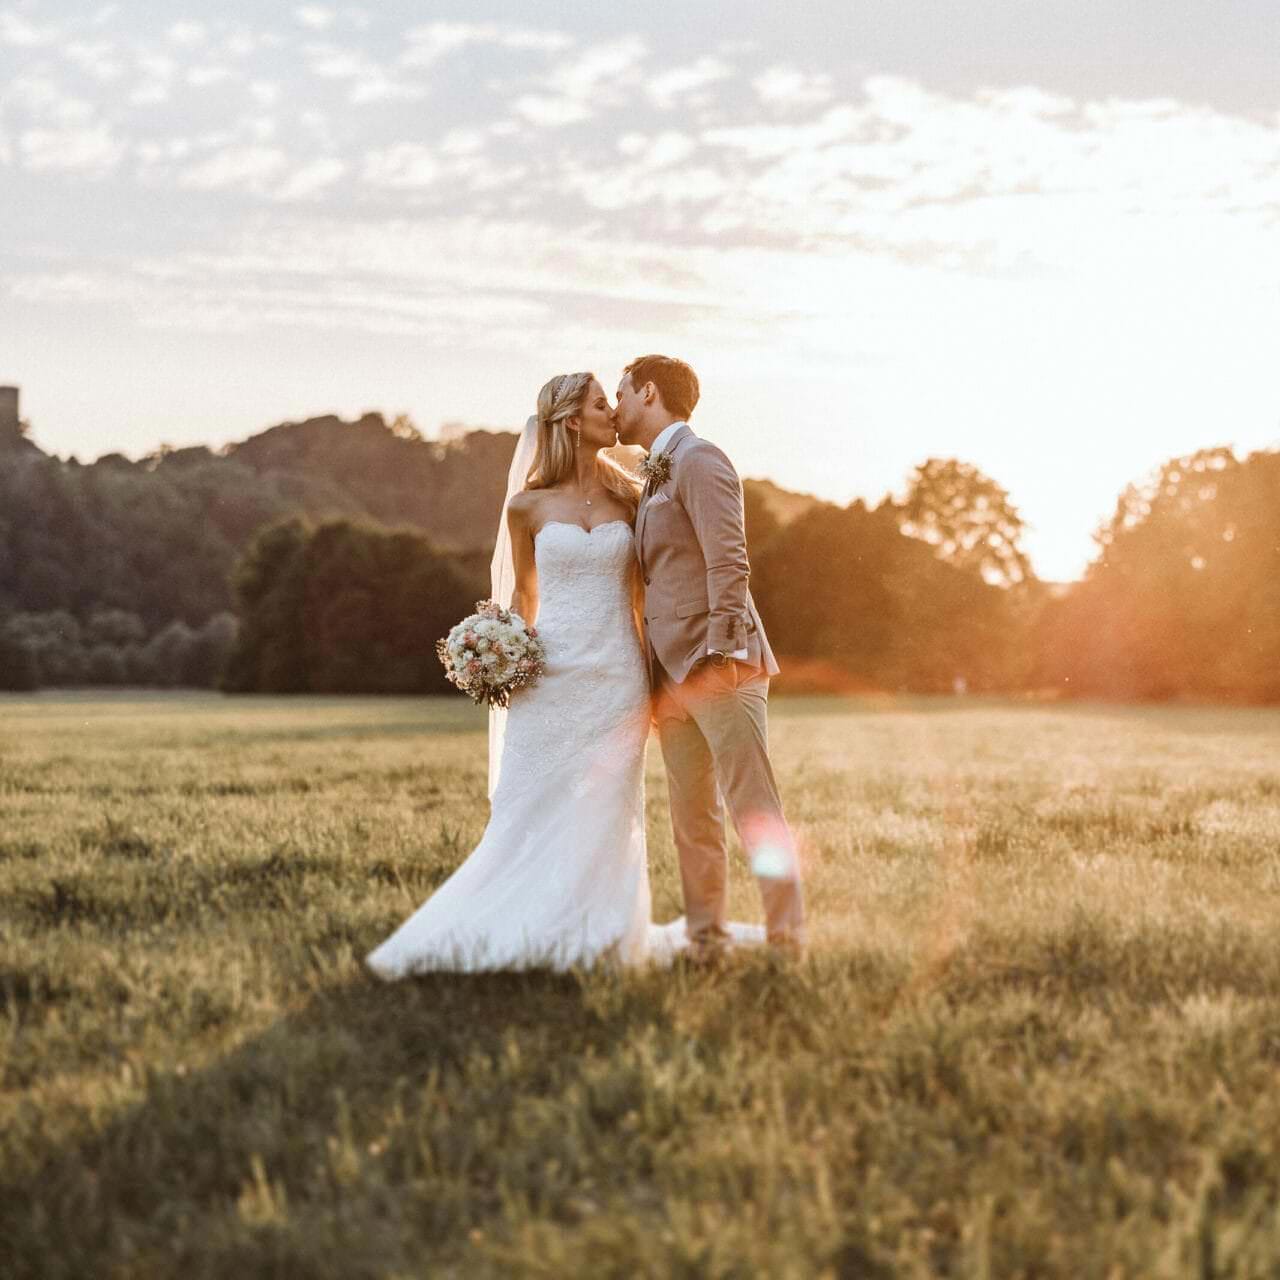 Hochzeitsfotograf Gladbeck Hochzeit Heiraten Hochzeitsfotos - Hochzeitspaar küsst sich auf einer Wiese bei Sonnenuntergang. Bräutigam hat seine linke Hand in der Hosentasche. Die Braut hält ihren Blumenstrauß in der rechten Hand fest. Im Hintergrund ist Wald zu erkennen